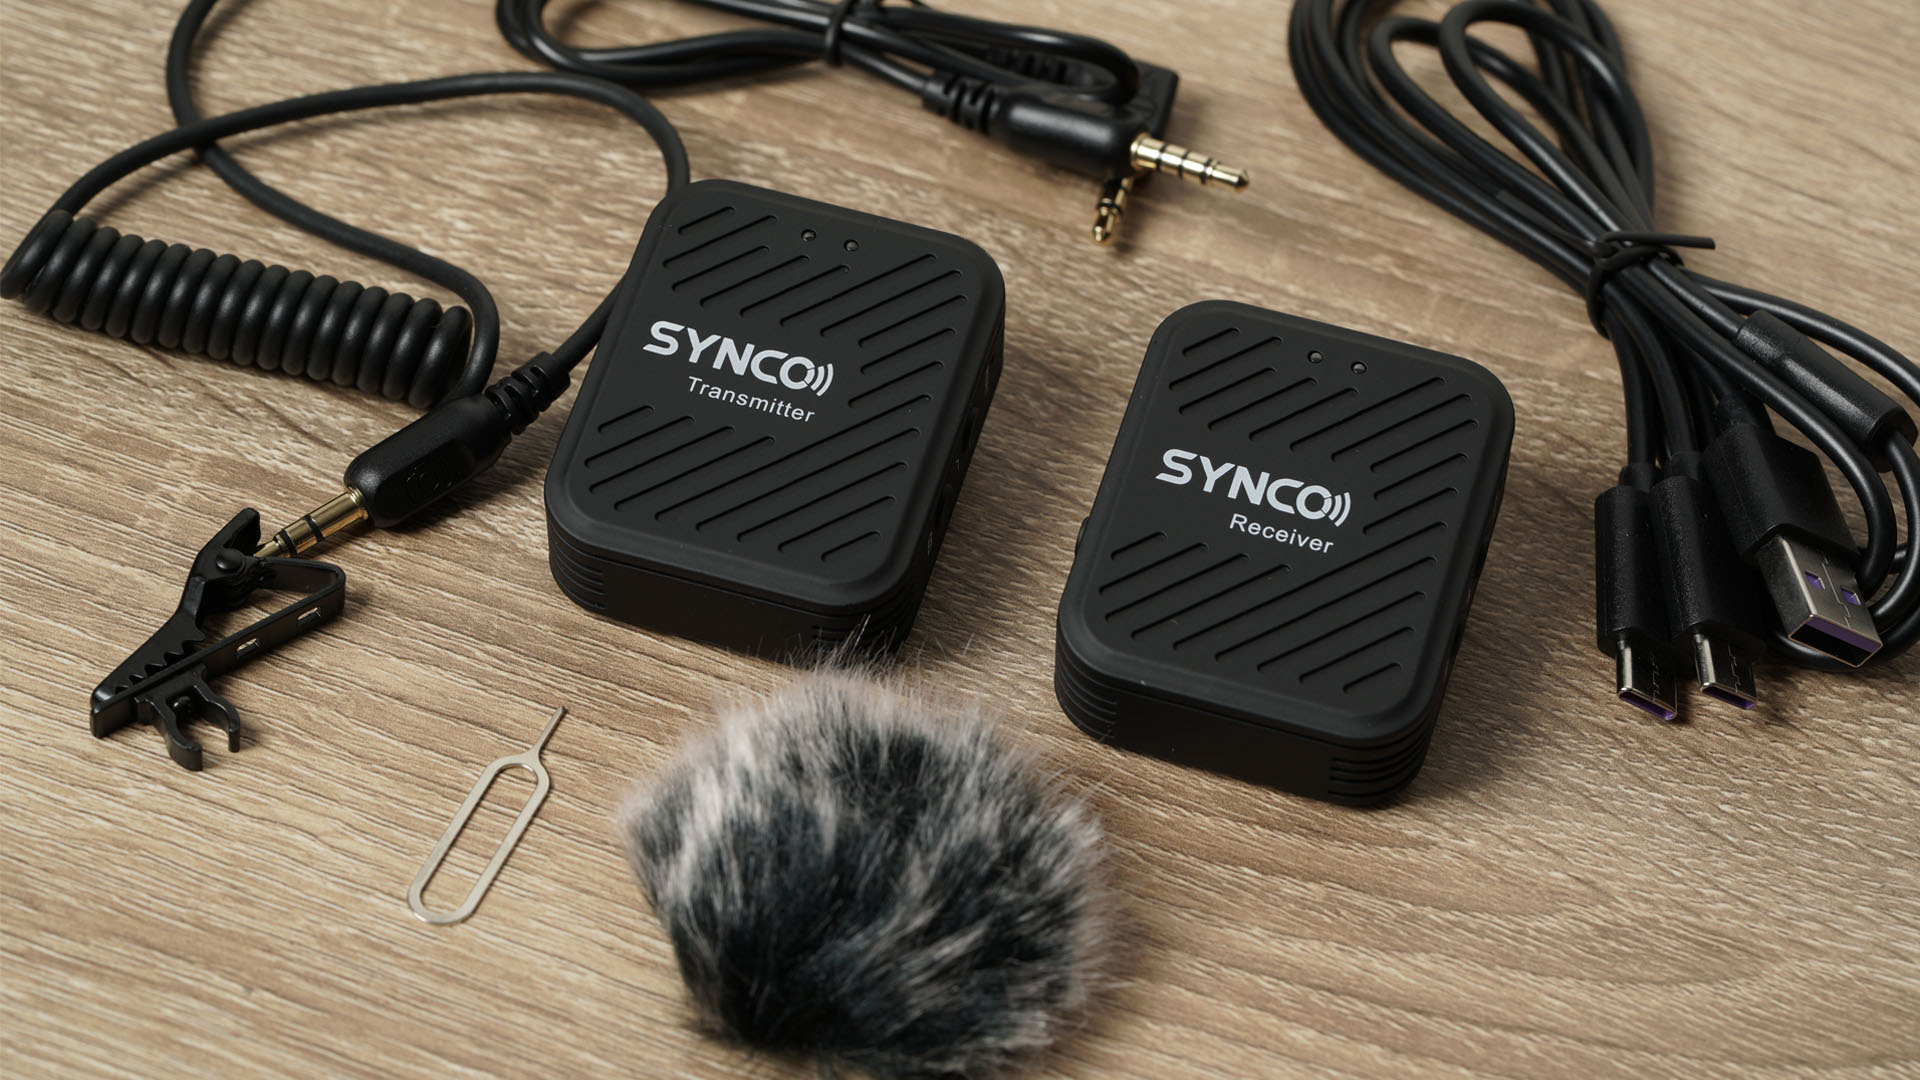 ทดสอบ Wireless Microphone Synco ที่ราคาไม่ถึง 4,000 บาท